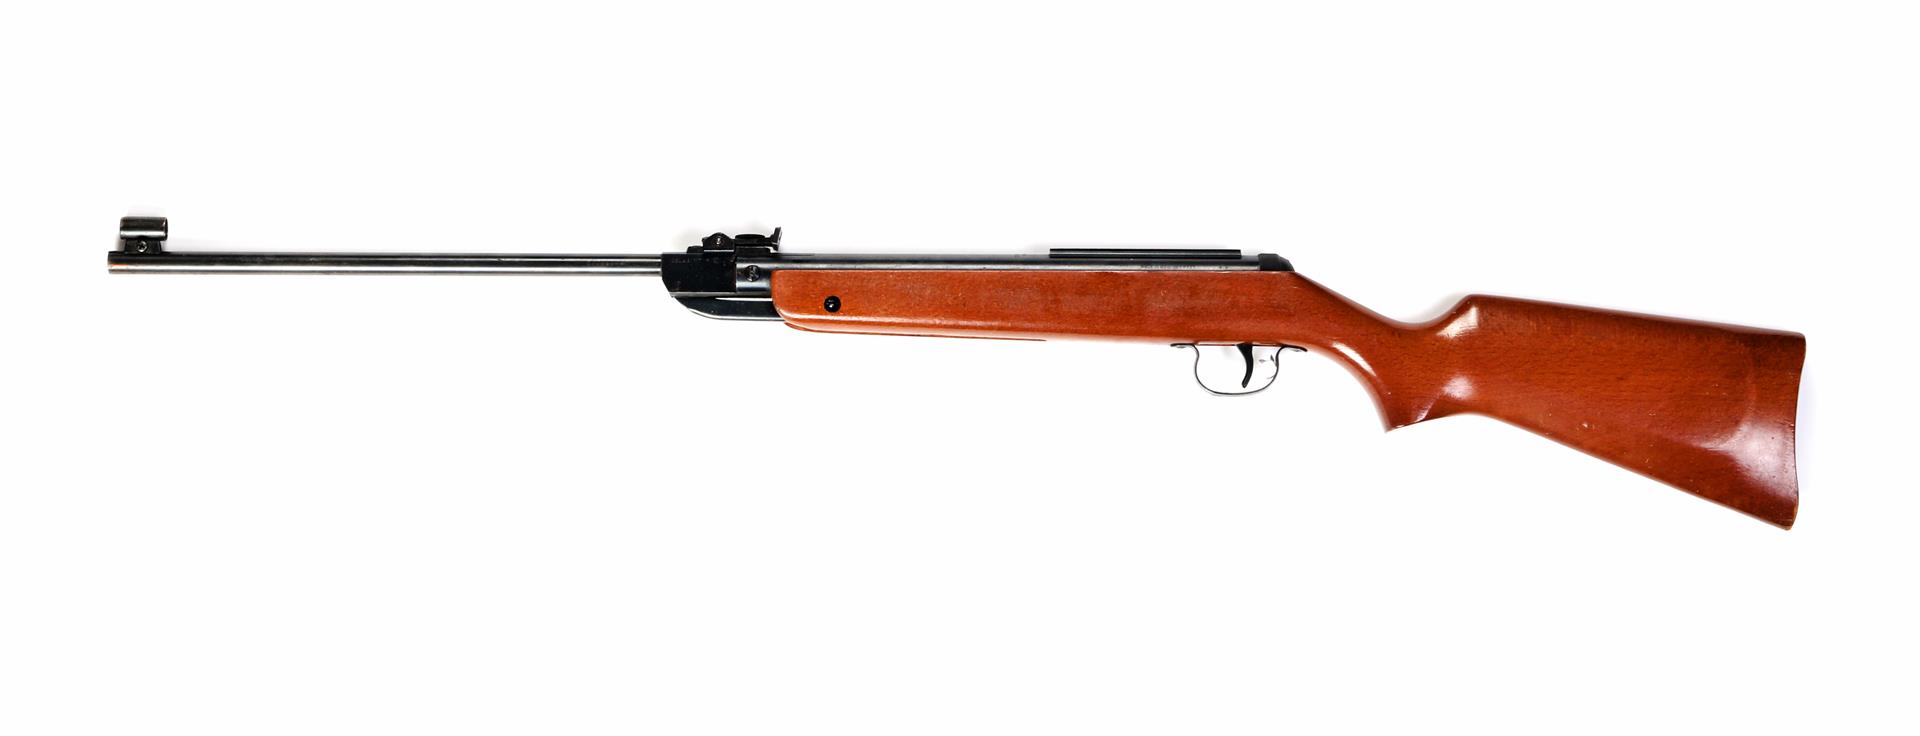 Diana air rifle, model 24